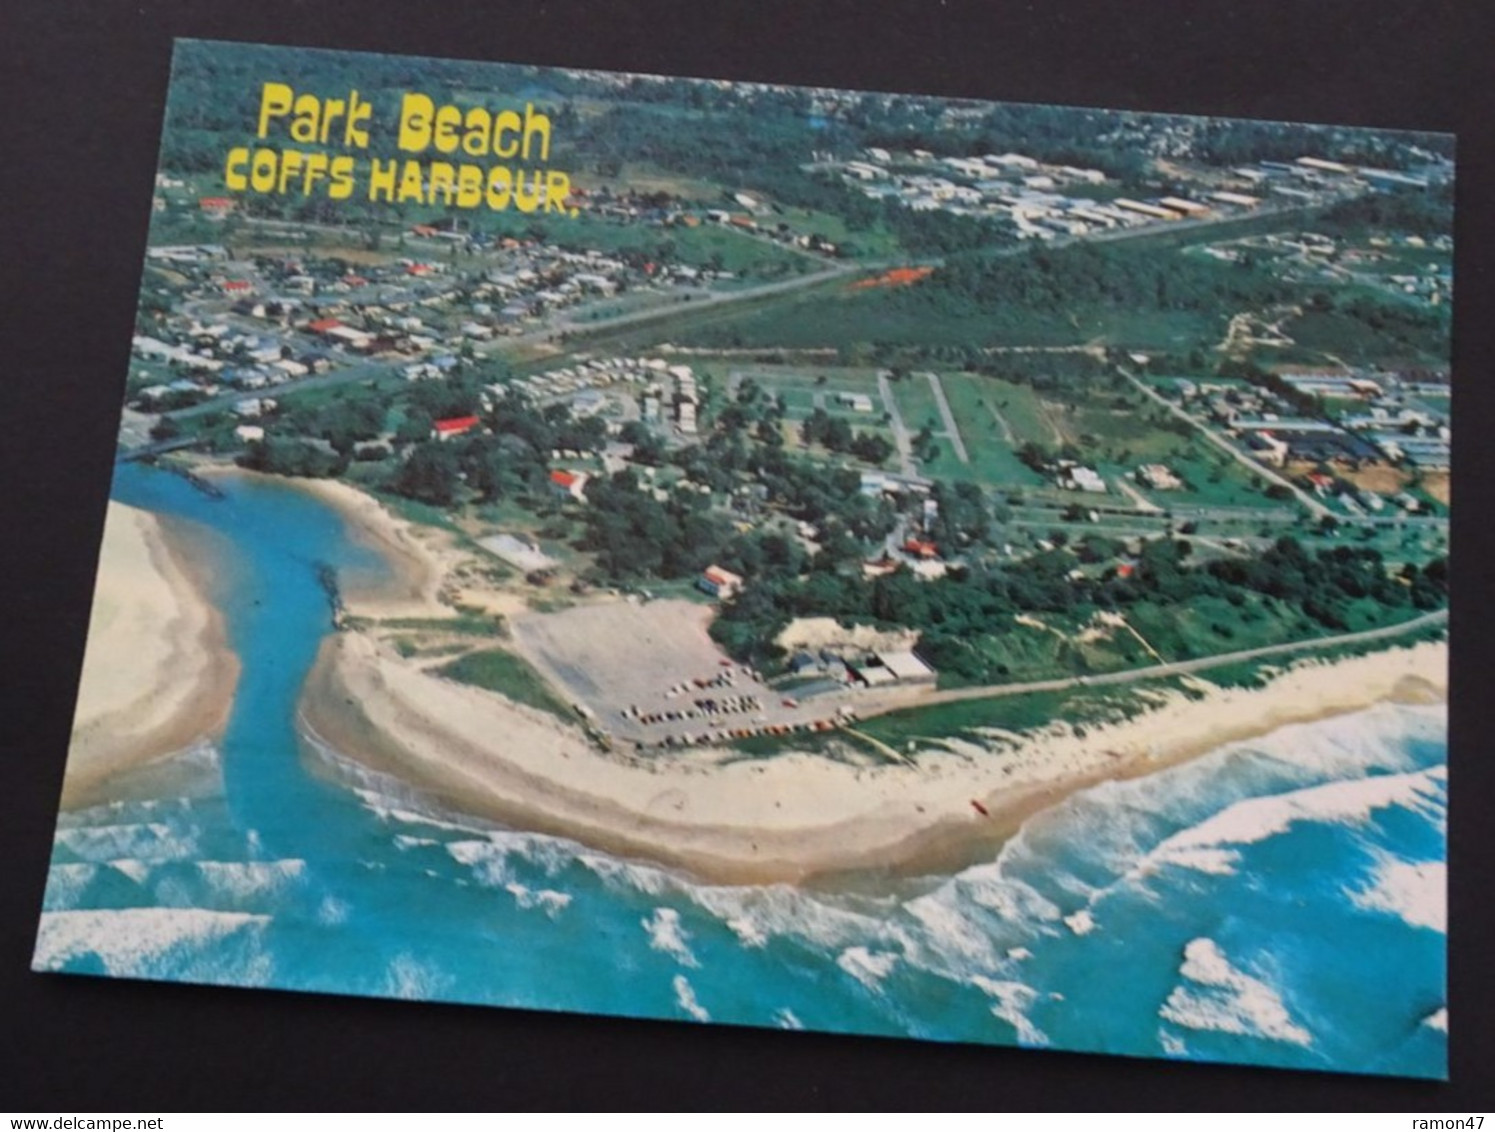 Coffs Harbour -  Park Beach - Coffs Harbour